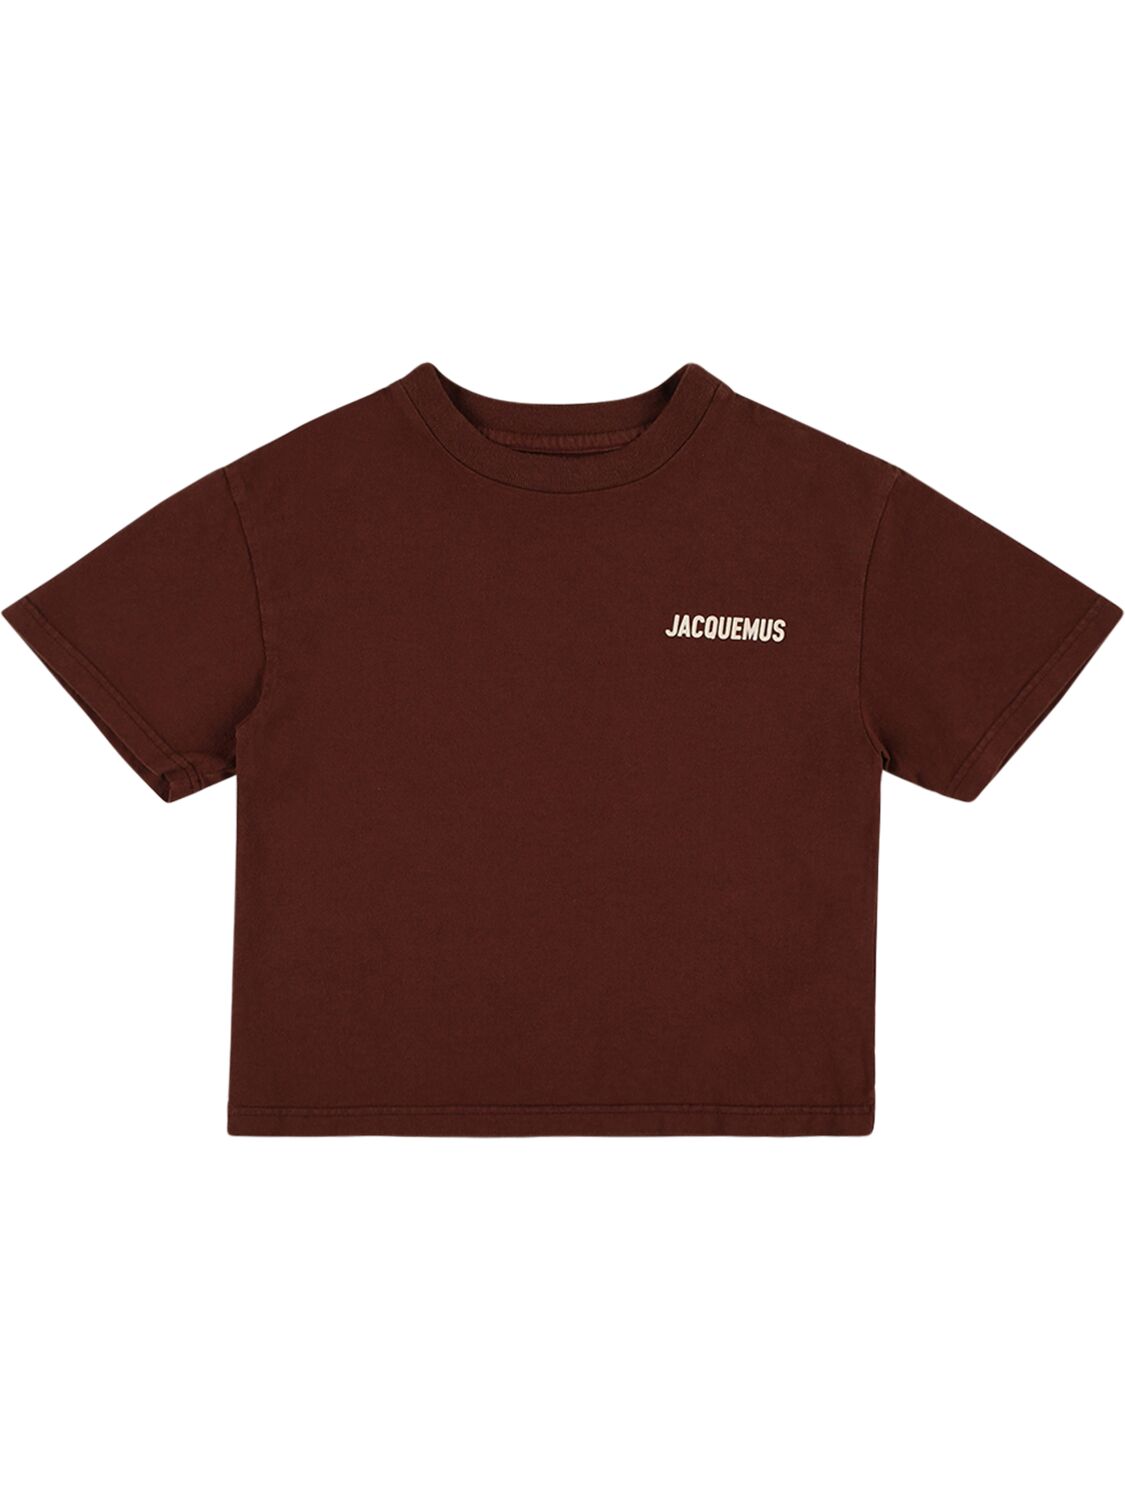 Jacquemus Kids' Logo Print Cotton Jersey T-shirt In Brown